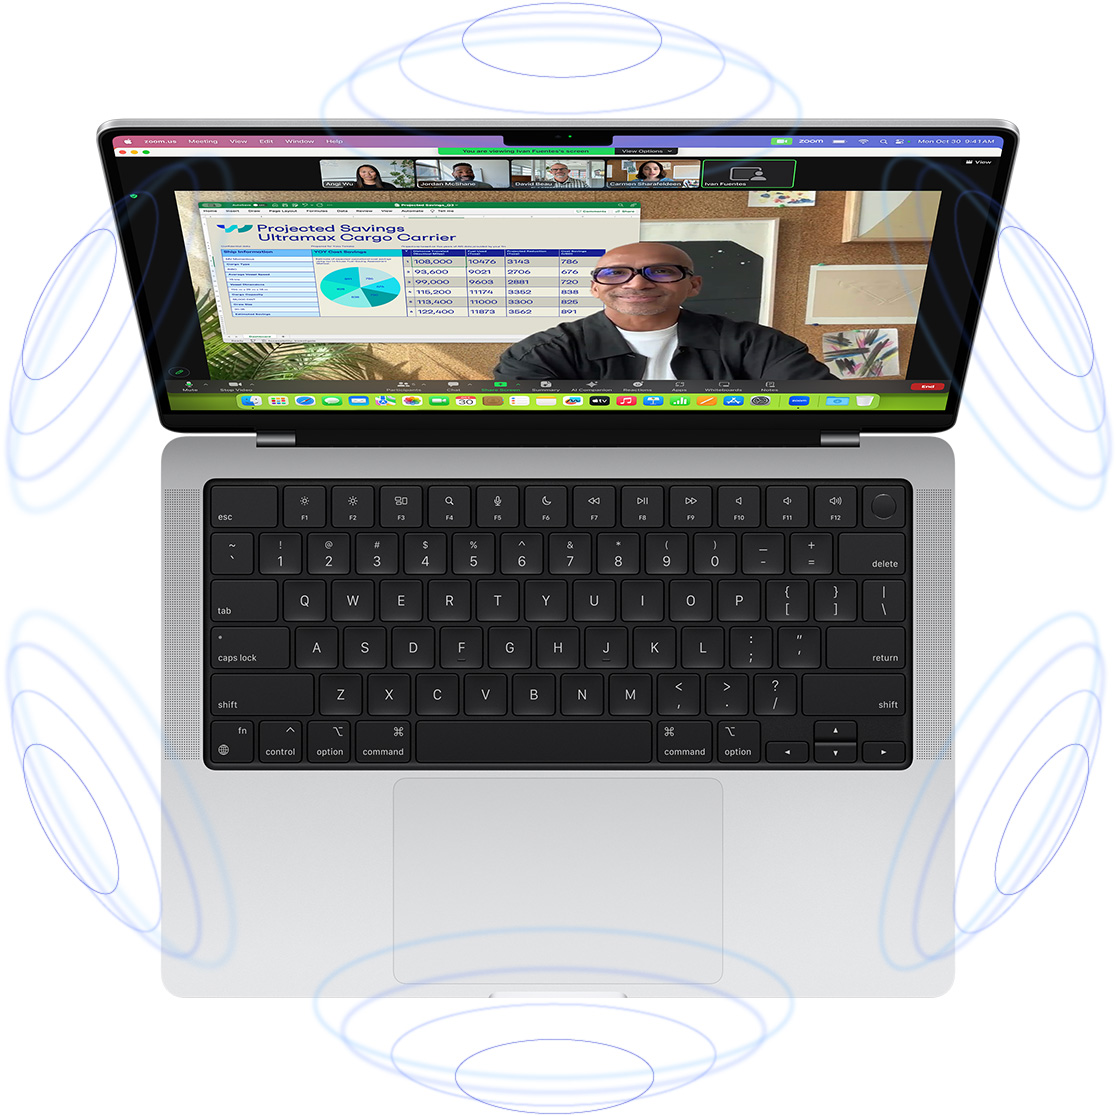 วิดีโอคอลด้วย FaceTime บน MacBook Pro ที่มีรูปวงกลมสีฟ้าล้อมรอบเพื่อบ่งบอกถึงความรู้สึกแบบ 3D ของระบบเสียงตามตำแหน่ง